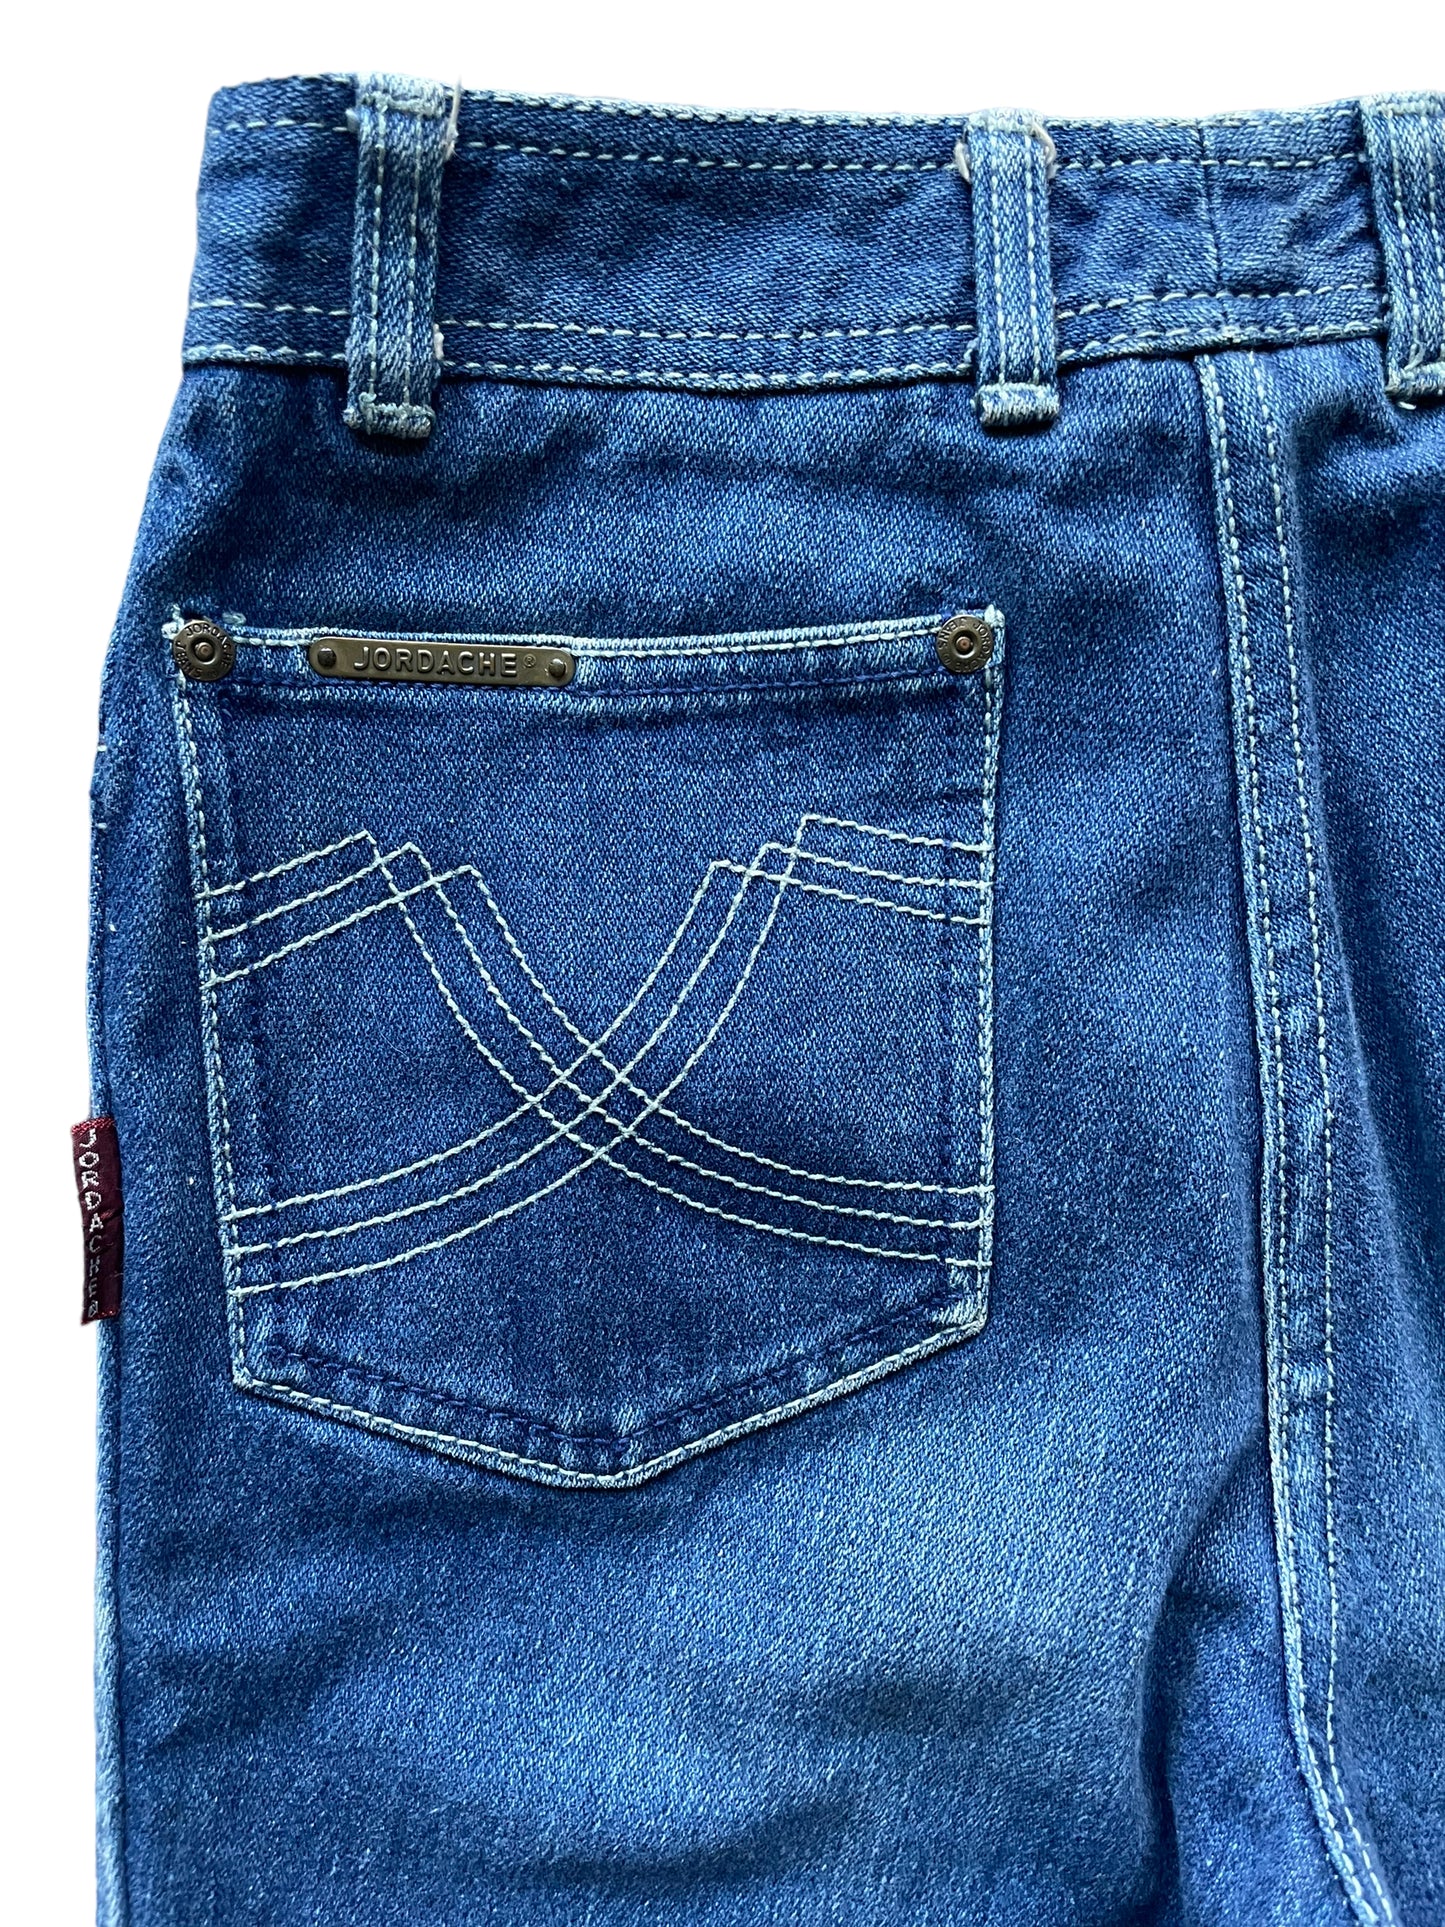 Back left pocket view of Vintage 1980s Jordache Jeans Sz SM 